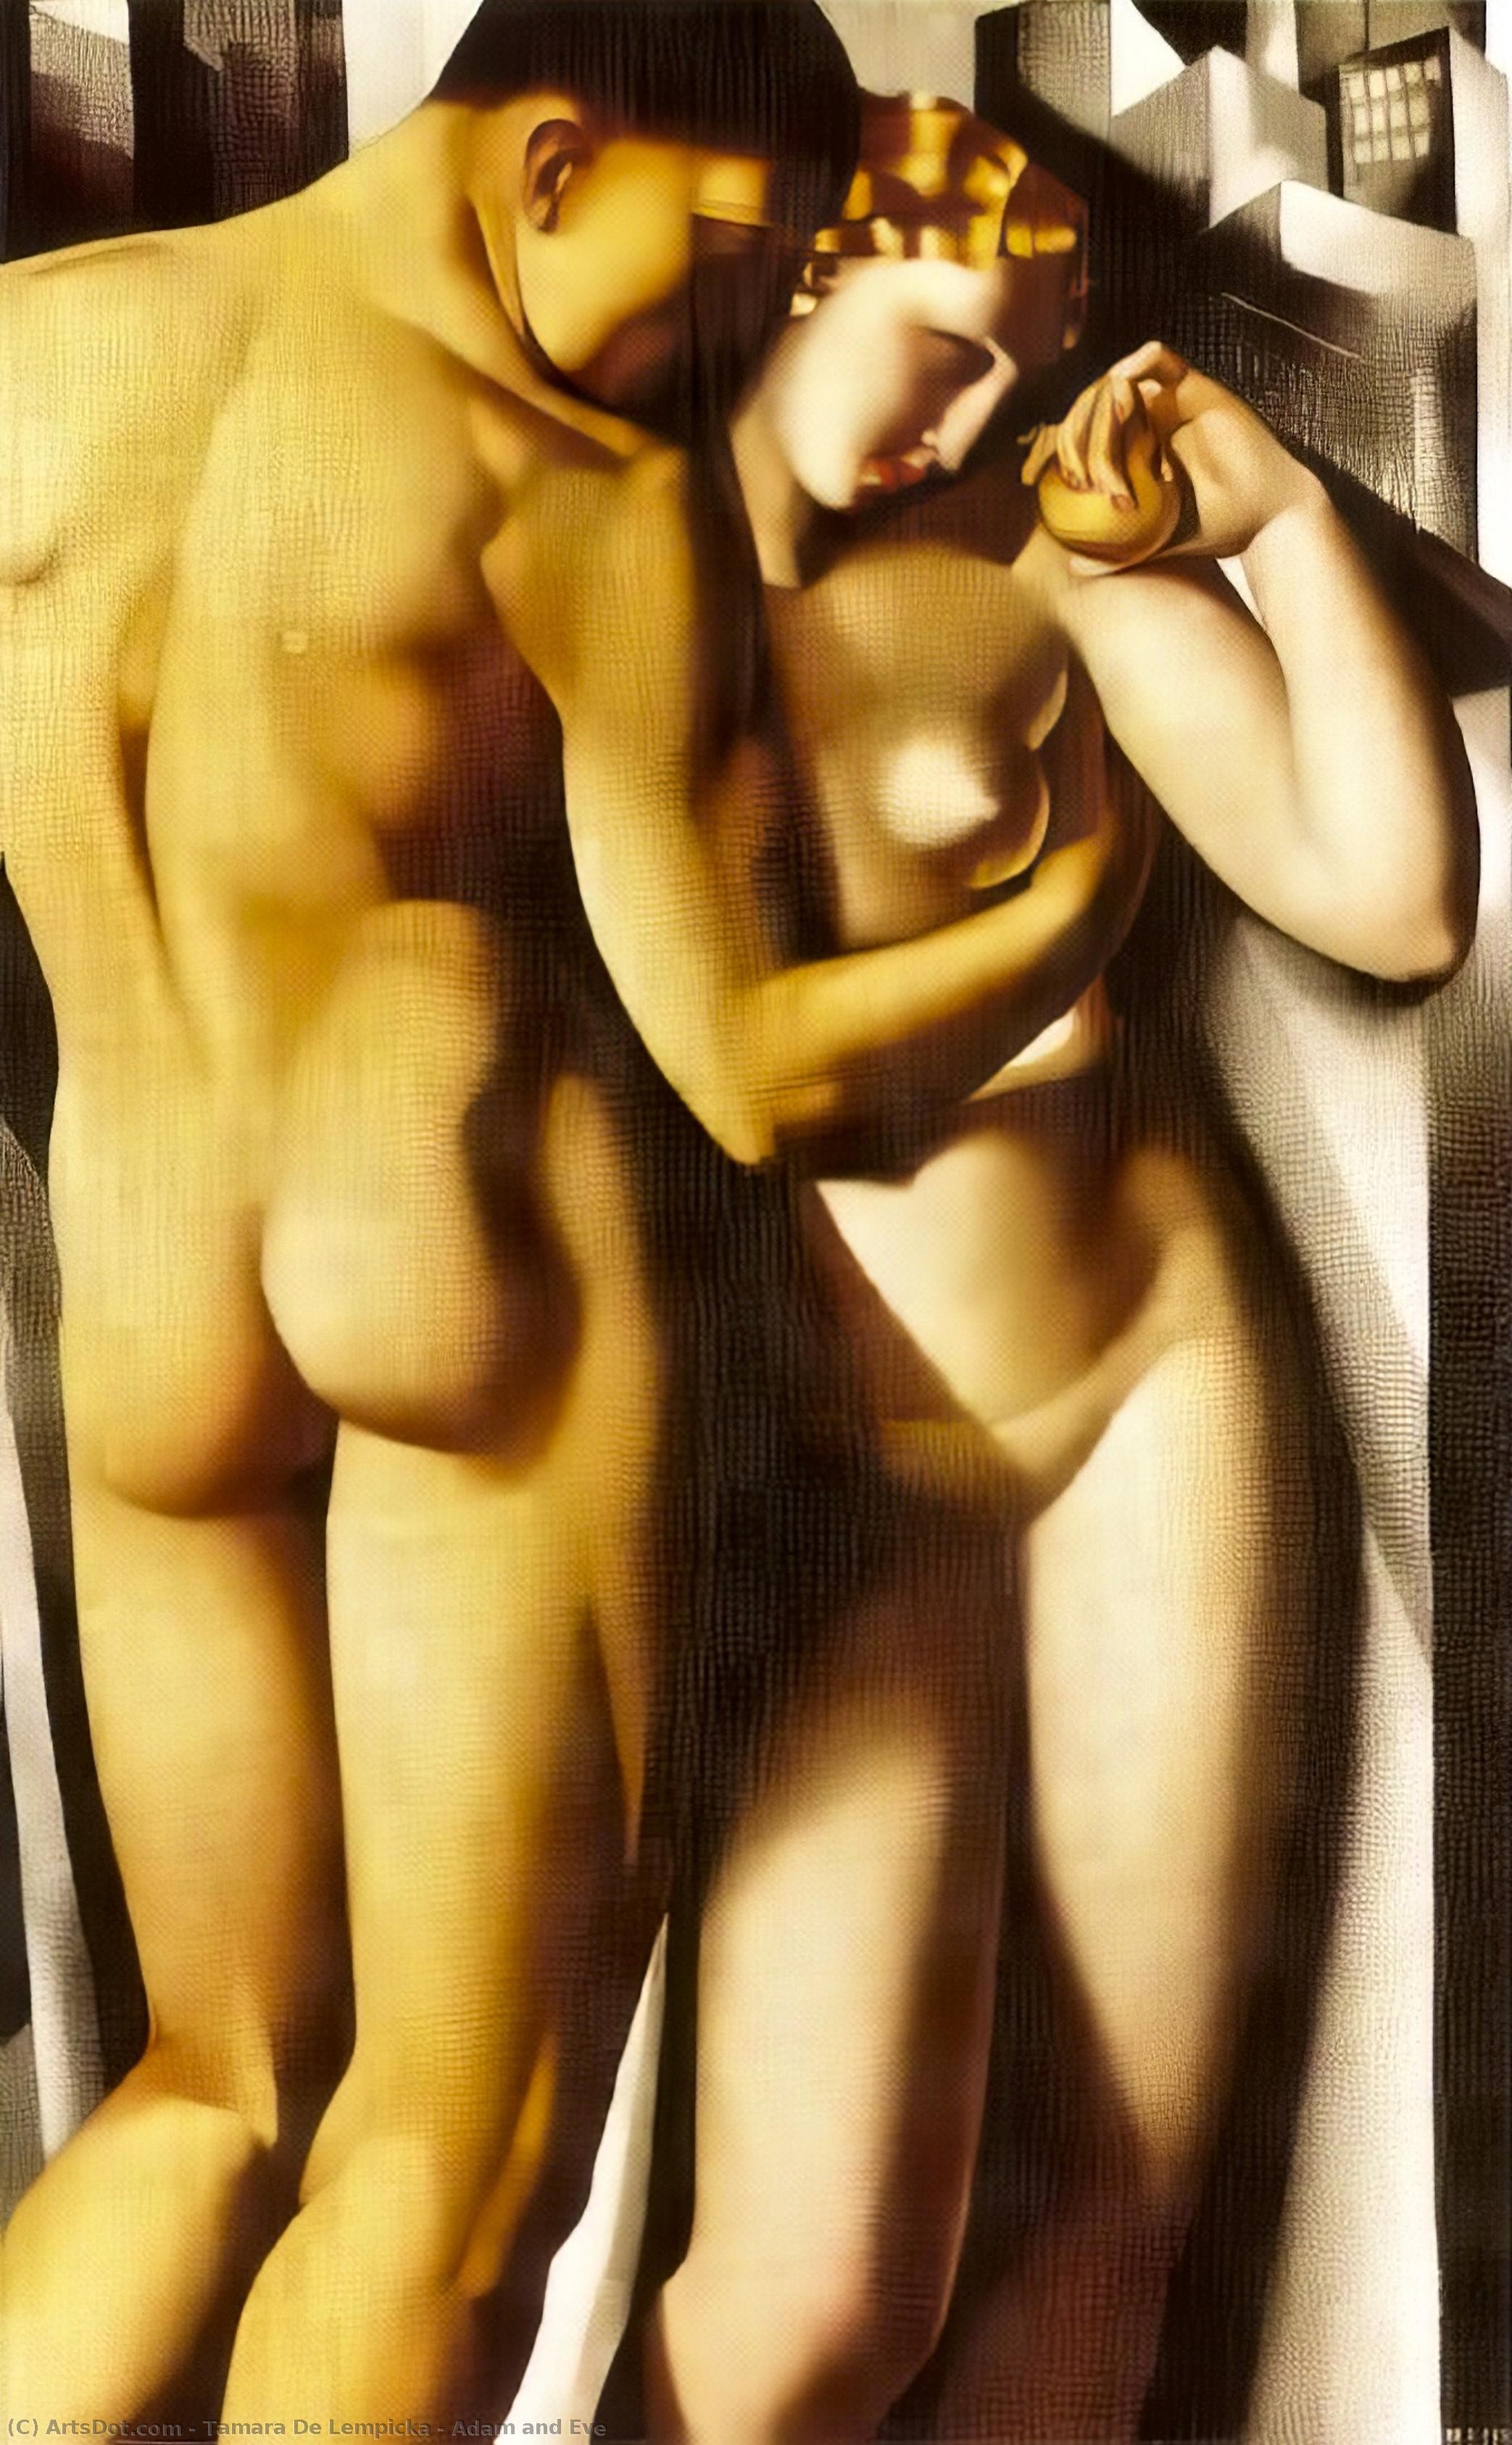 Wikoo.org - موسوعة الفنون الجميلة - اللوحة، العمل الفني Tamara De Lempicka - Adam and Eve